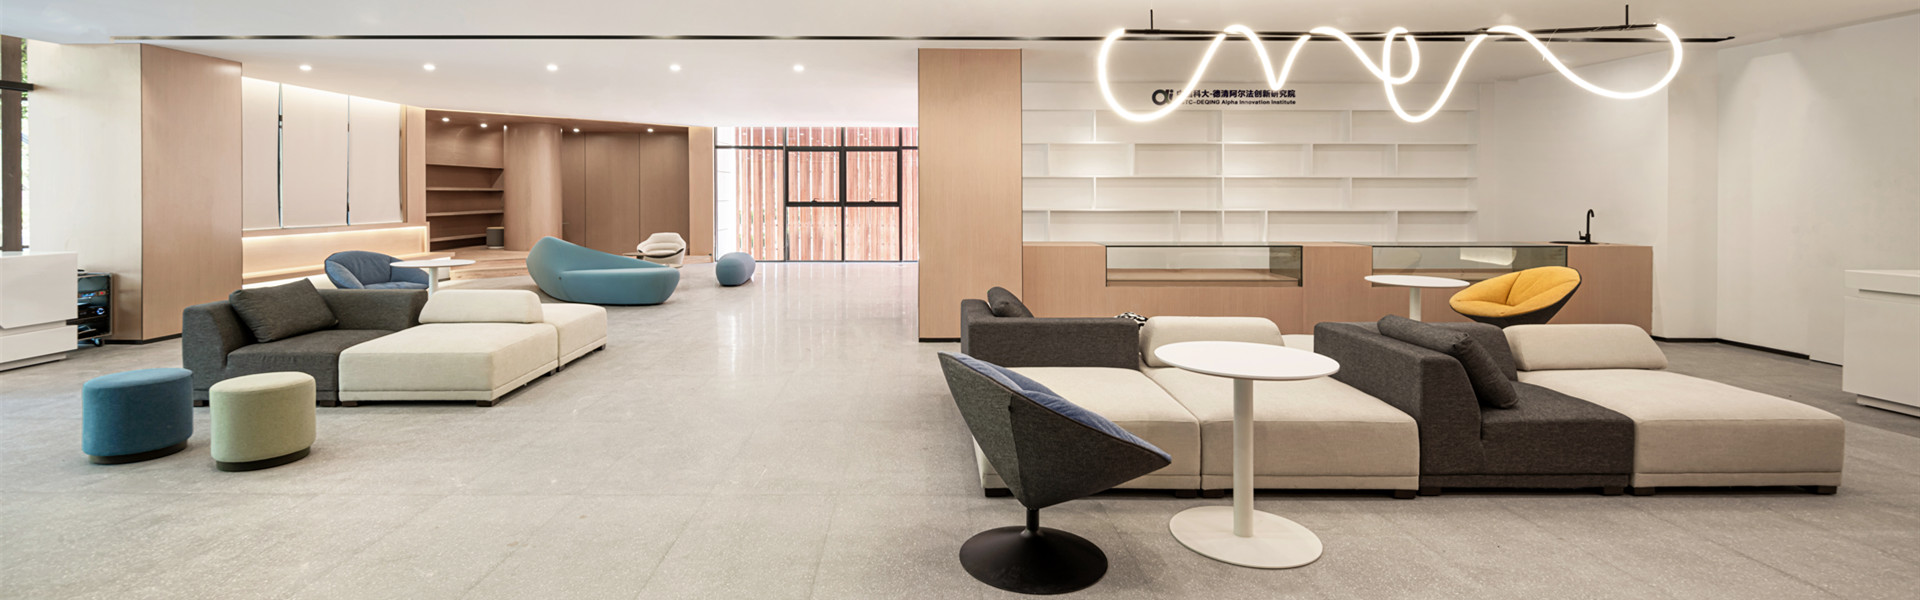 阿尔法创新研究院休闲空间 圣奥办公家具设计